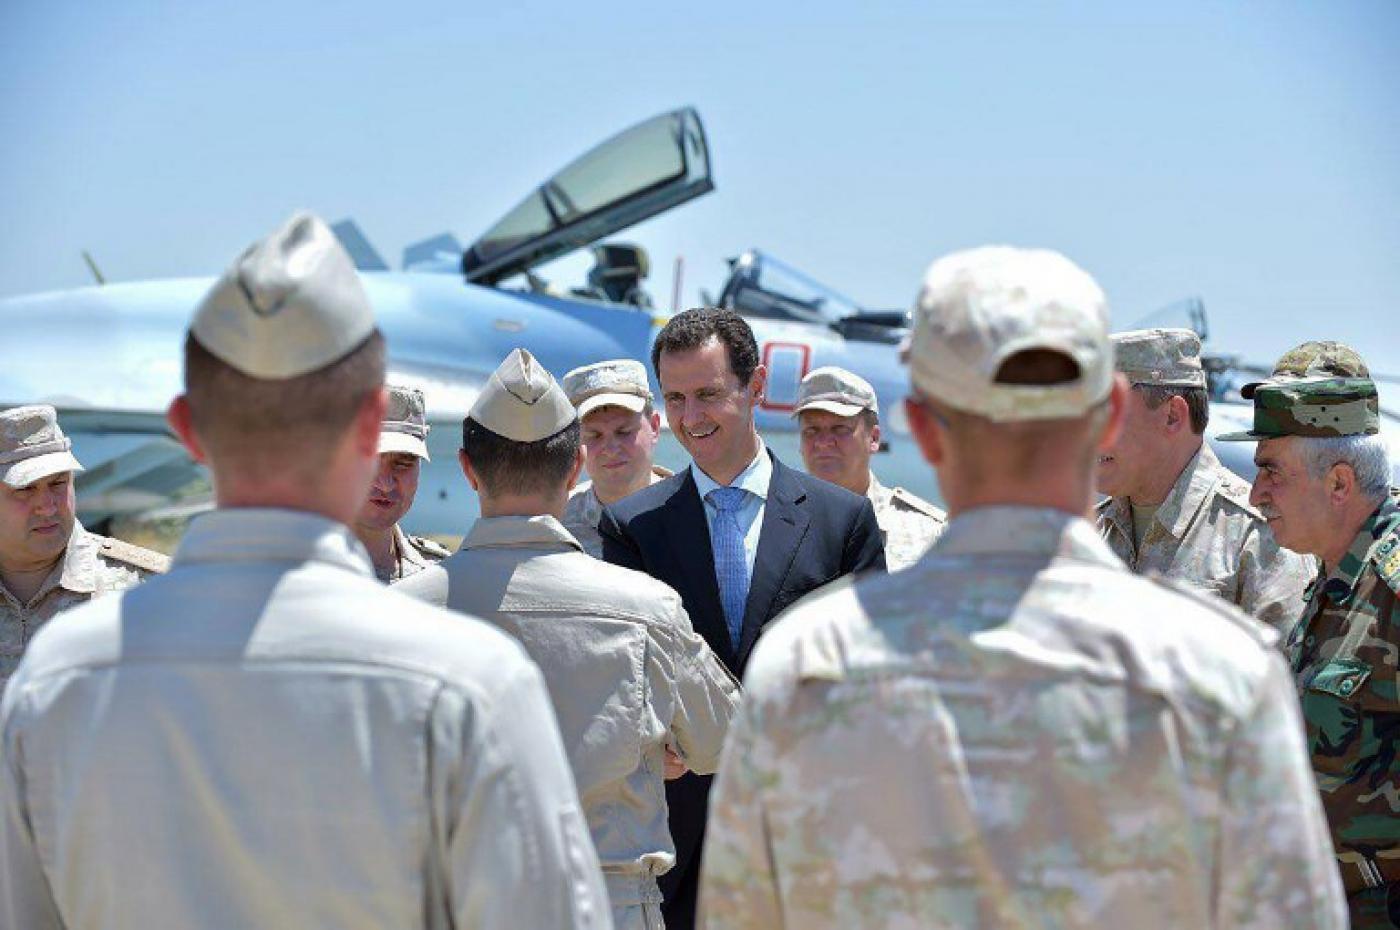 Le président syrien Bachar al-Assad visite la base aérienne de Hmeimim, dans la province côtière de Lattaquié en Syrie, le 27 juin 2017 (AFP)